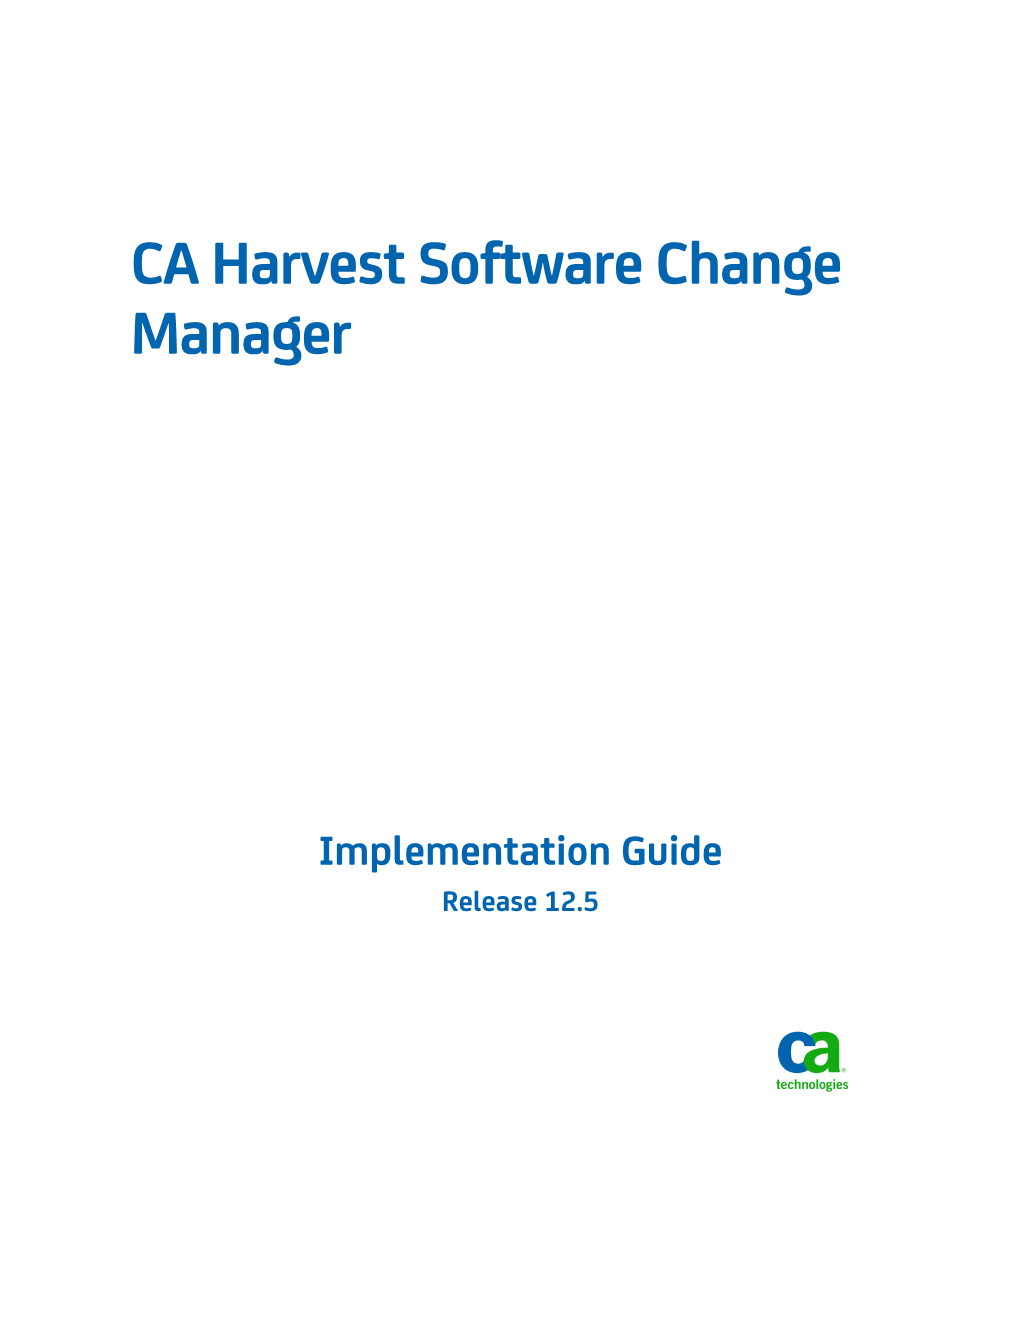 CA Harvest Software Change Manager Implementation Guide